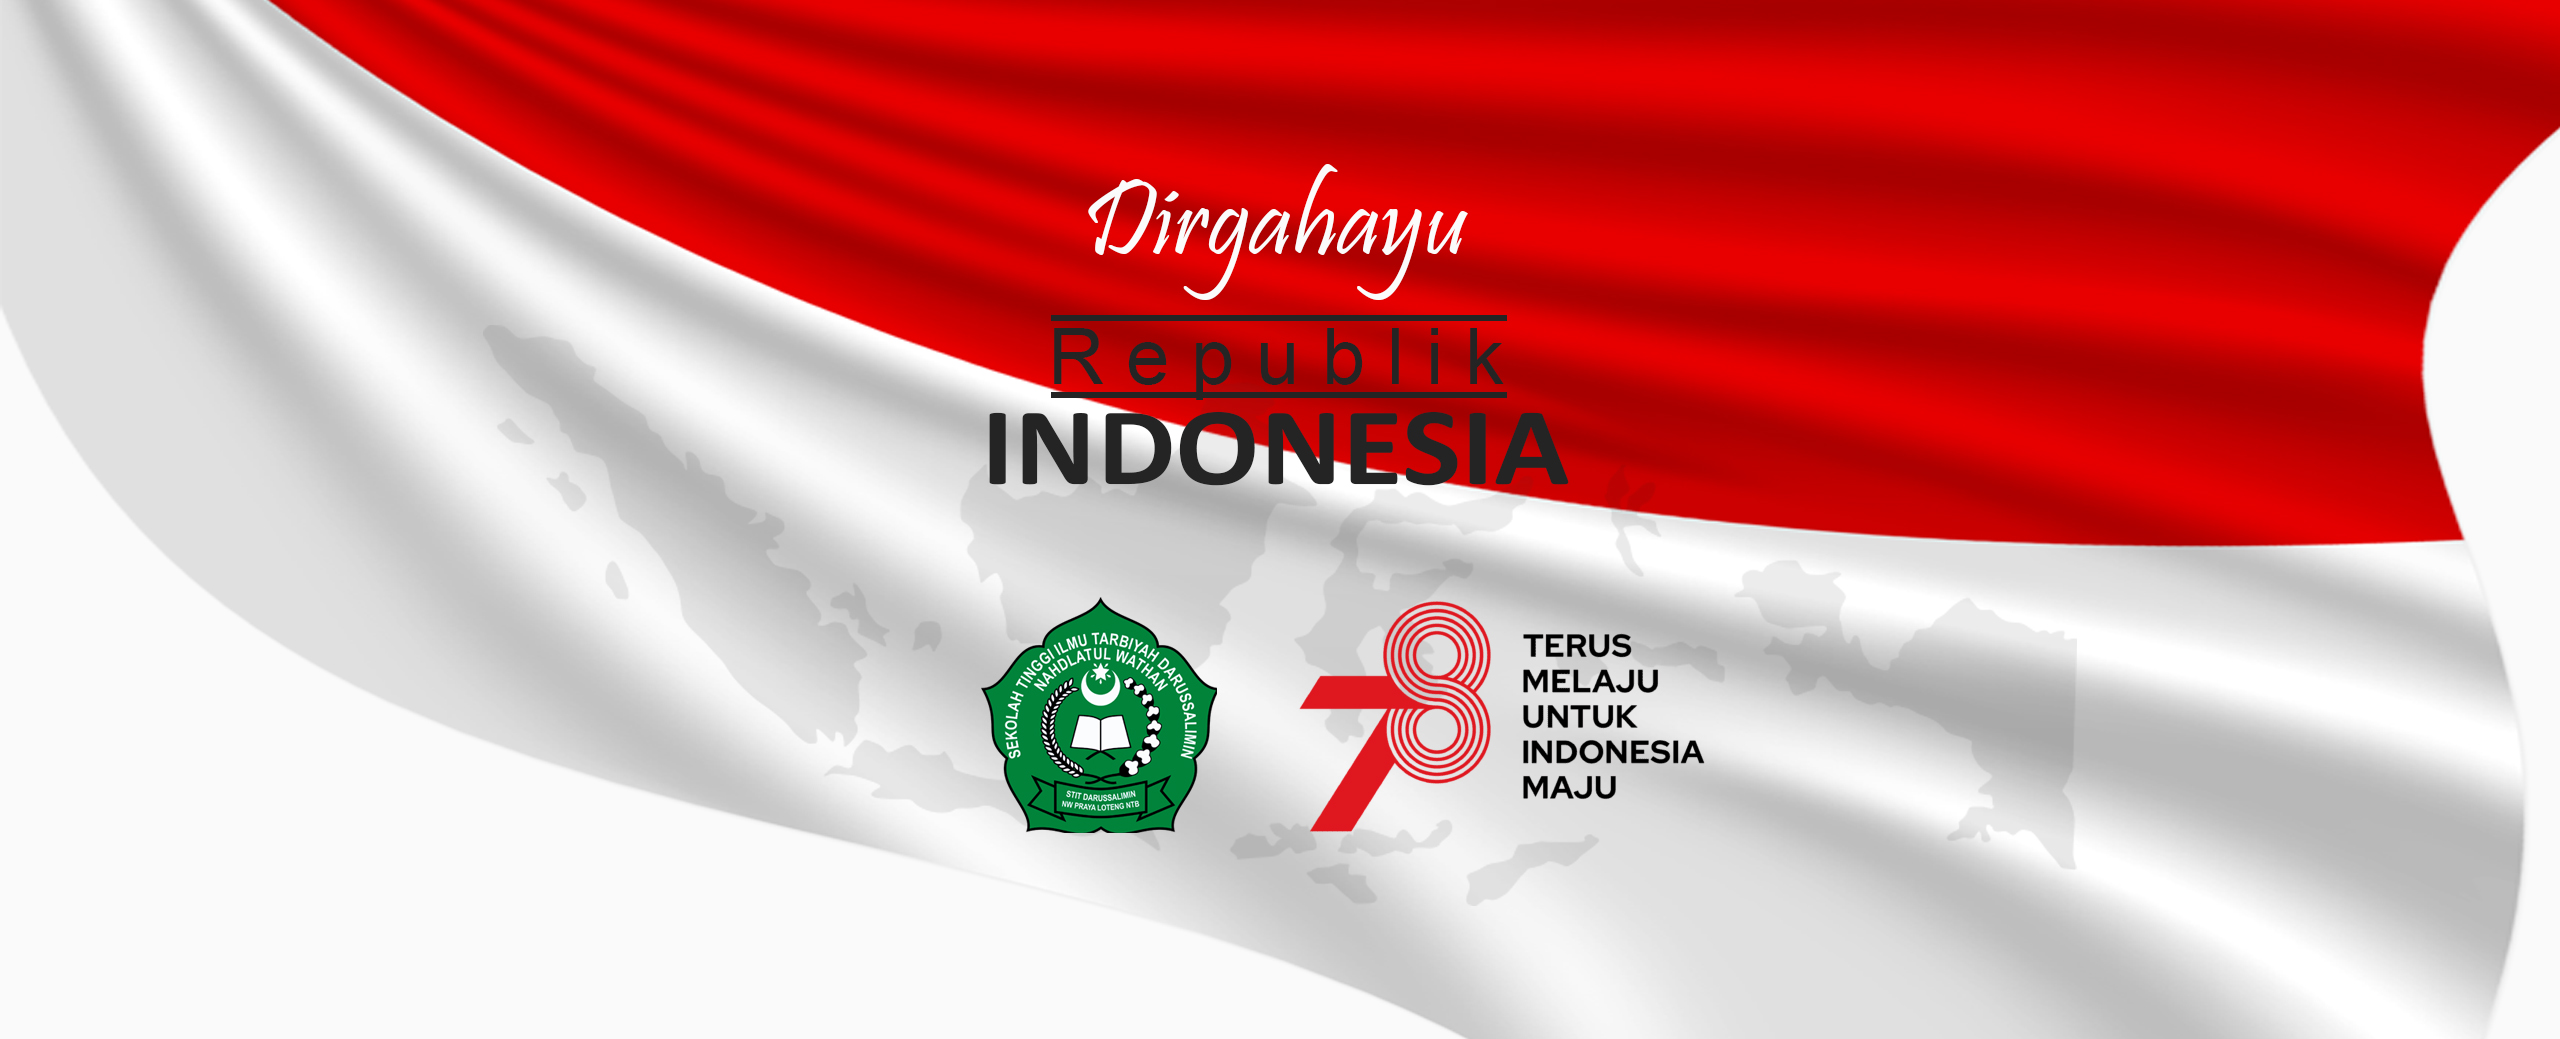 You are currently viewing DIRGAHAYU REPUBLIK INDONESIA KE -78 “TERUS MELAJU UNTUK INDONESIA MAJU”